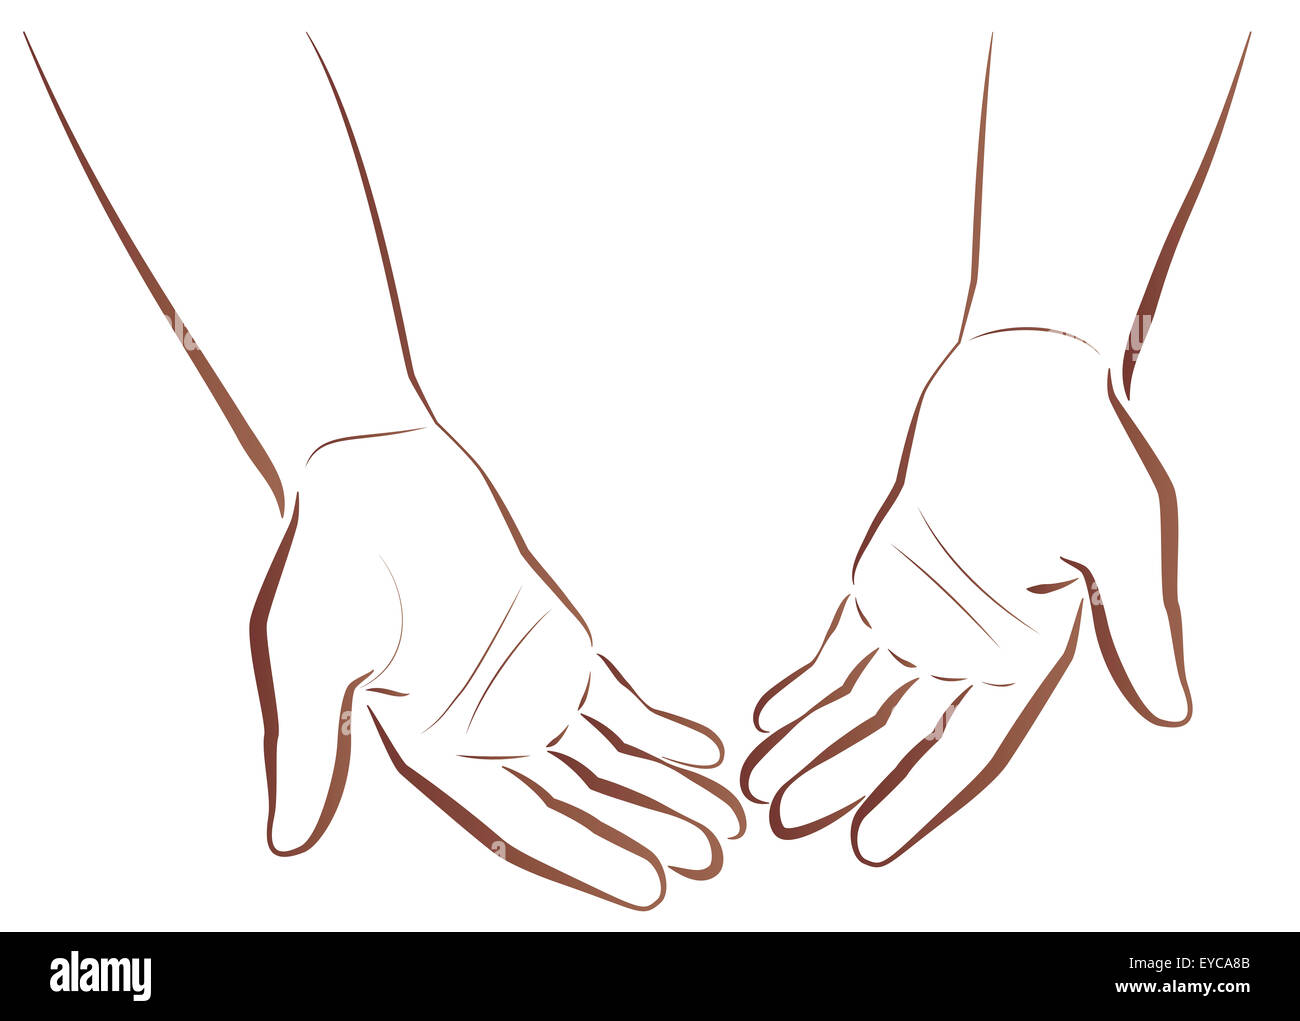 Mit leeren Händen. Zwei Hände eines armen Mannes zeigt seine leeren Hände. Abbildung auf weißem Hintergrund zu skizzieren. Stockfoto